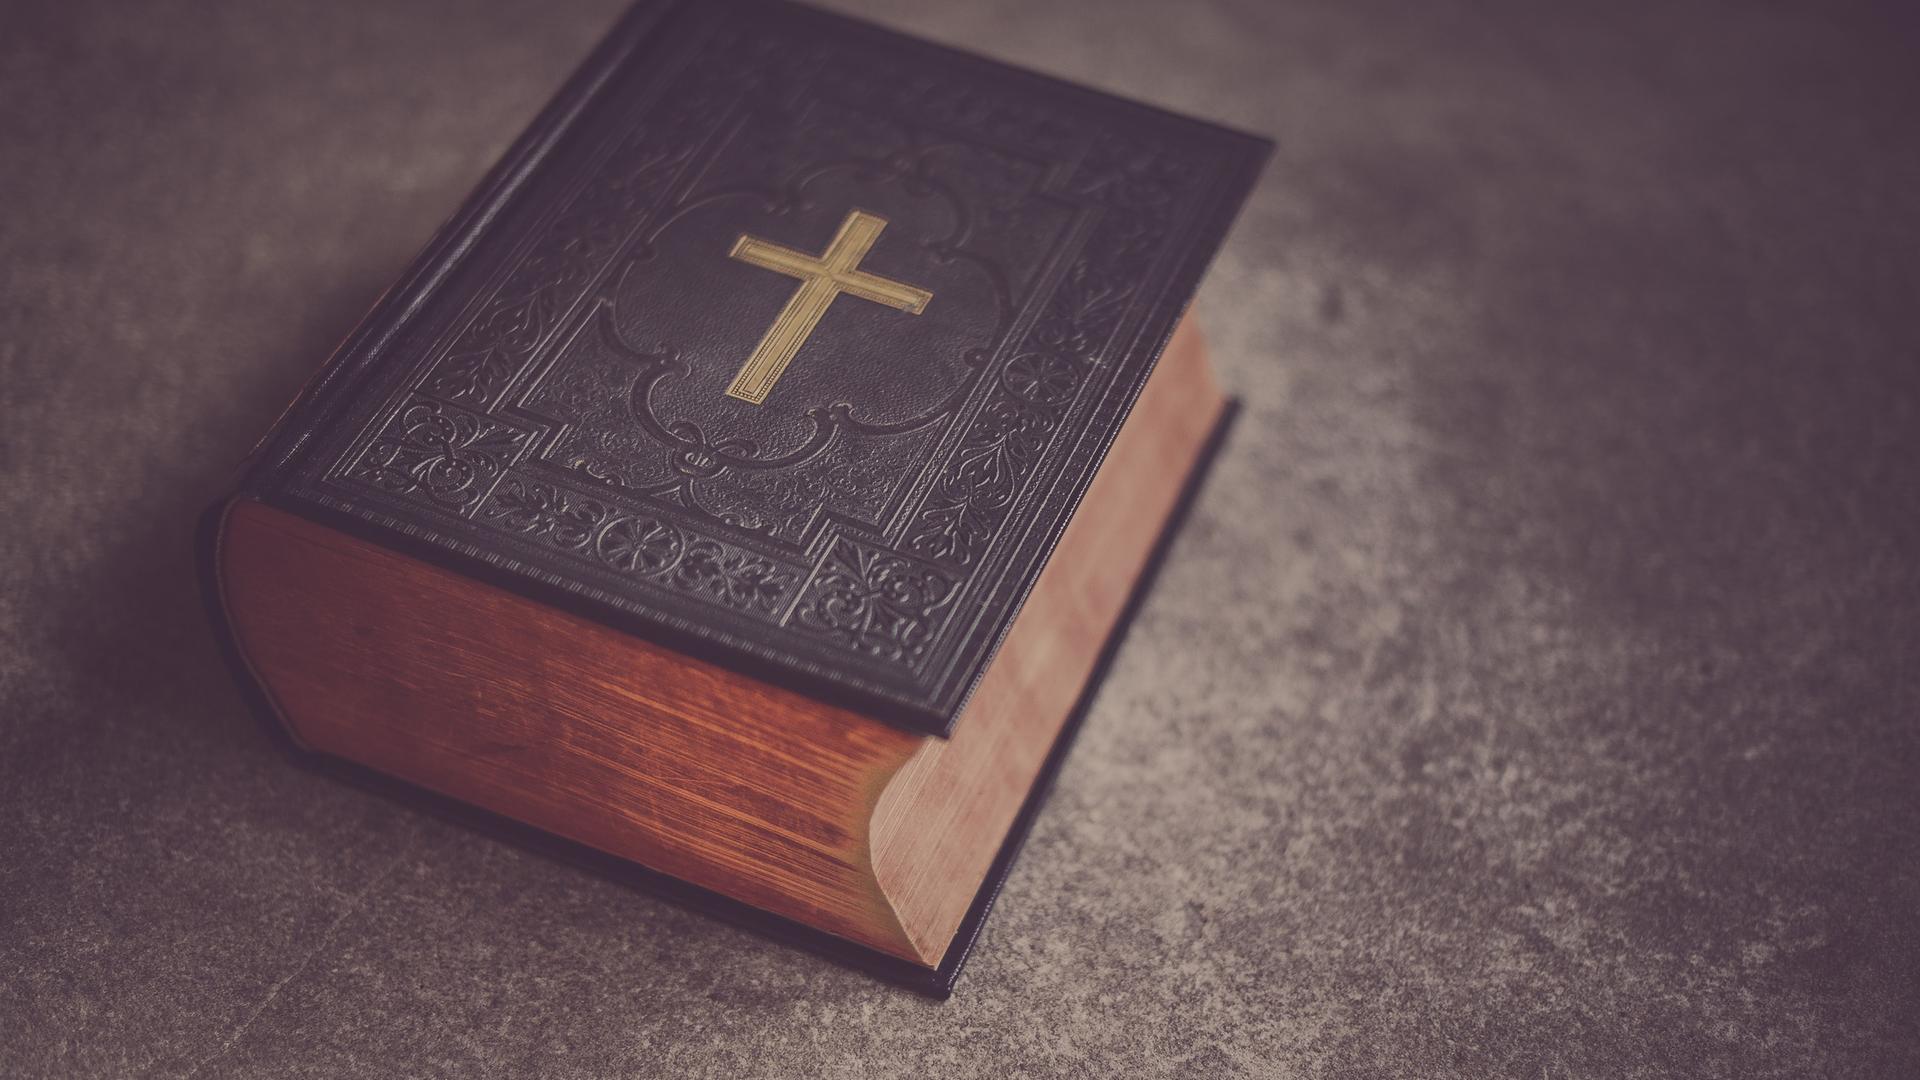 Eine schwere, dunkle Bibel mit einem goldenen Kreuz auf dem Deckel liegt auf einem Tisch.